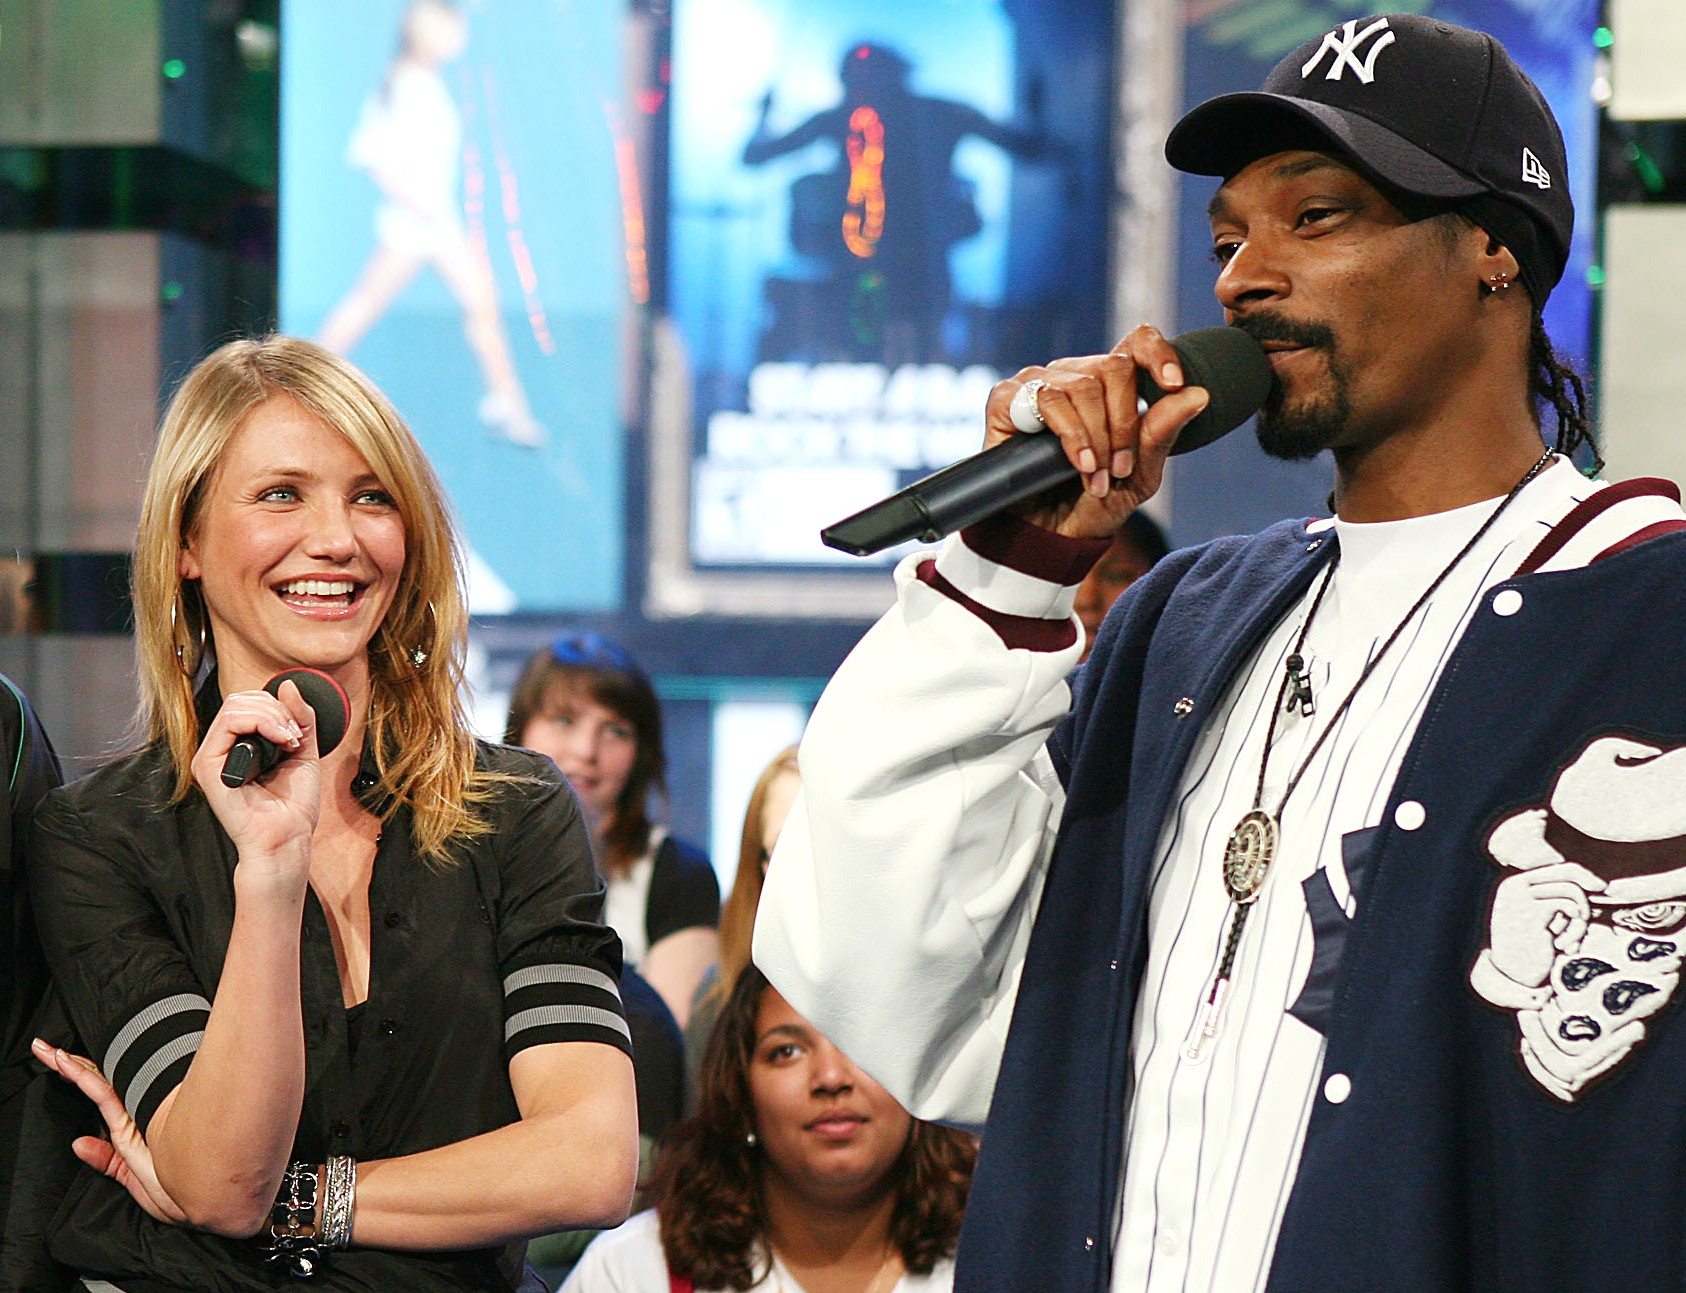 A atriz Cameron Diaz, de 41 anos, e o rapper Snoop Lion (ex-Snoop Dogg), de 42, estudaram juntos no ensino médio e se tornaram amigos na escola. Cameron, aliás, afirma que em algum momento deve ter comprado maconha do músico. (Foto: Getty Images)